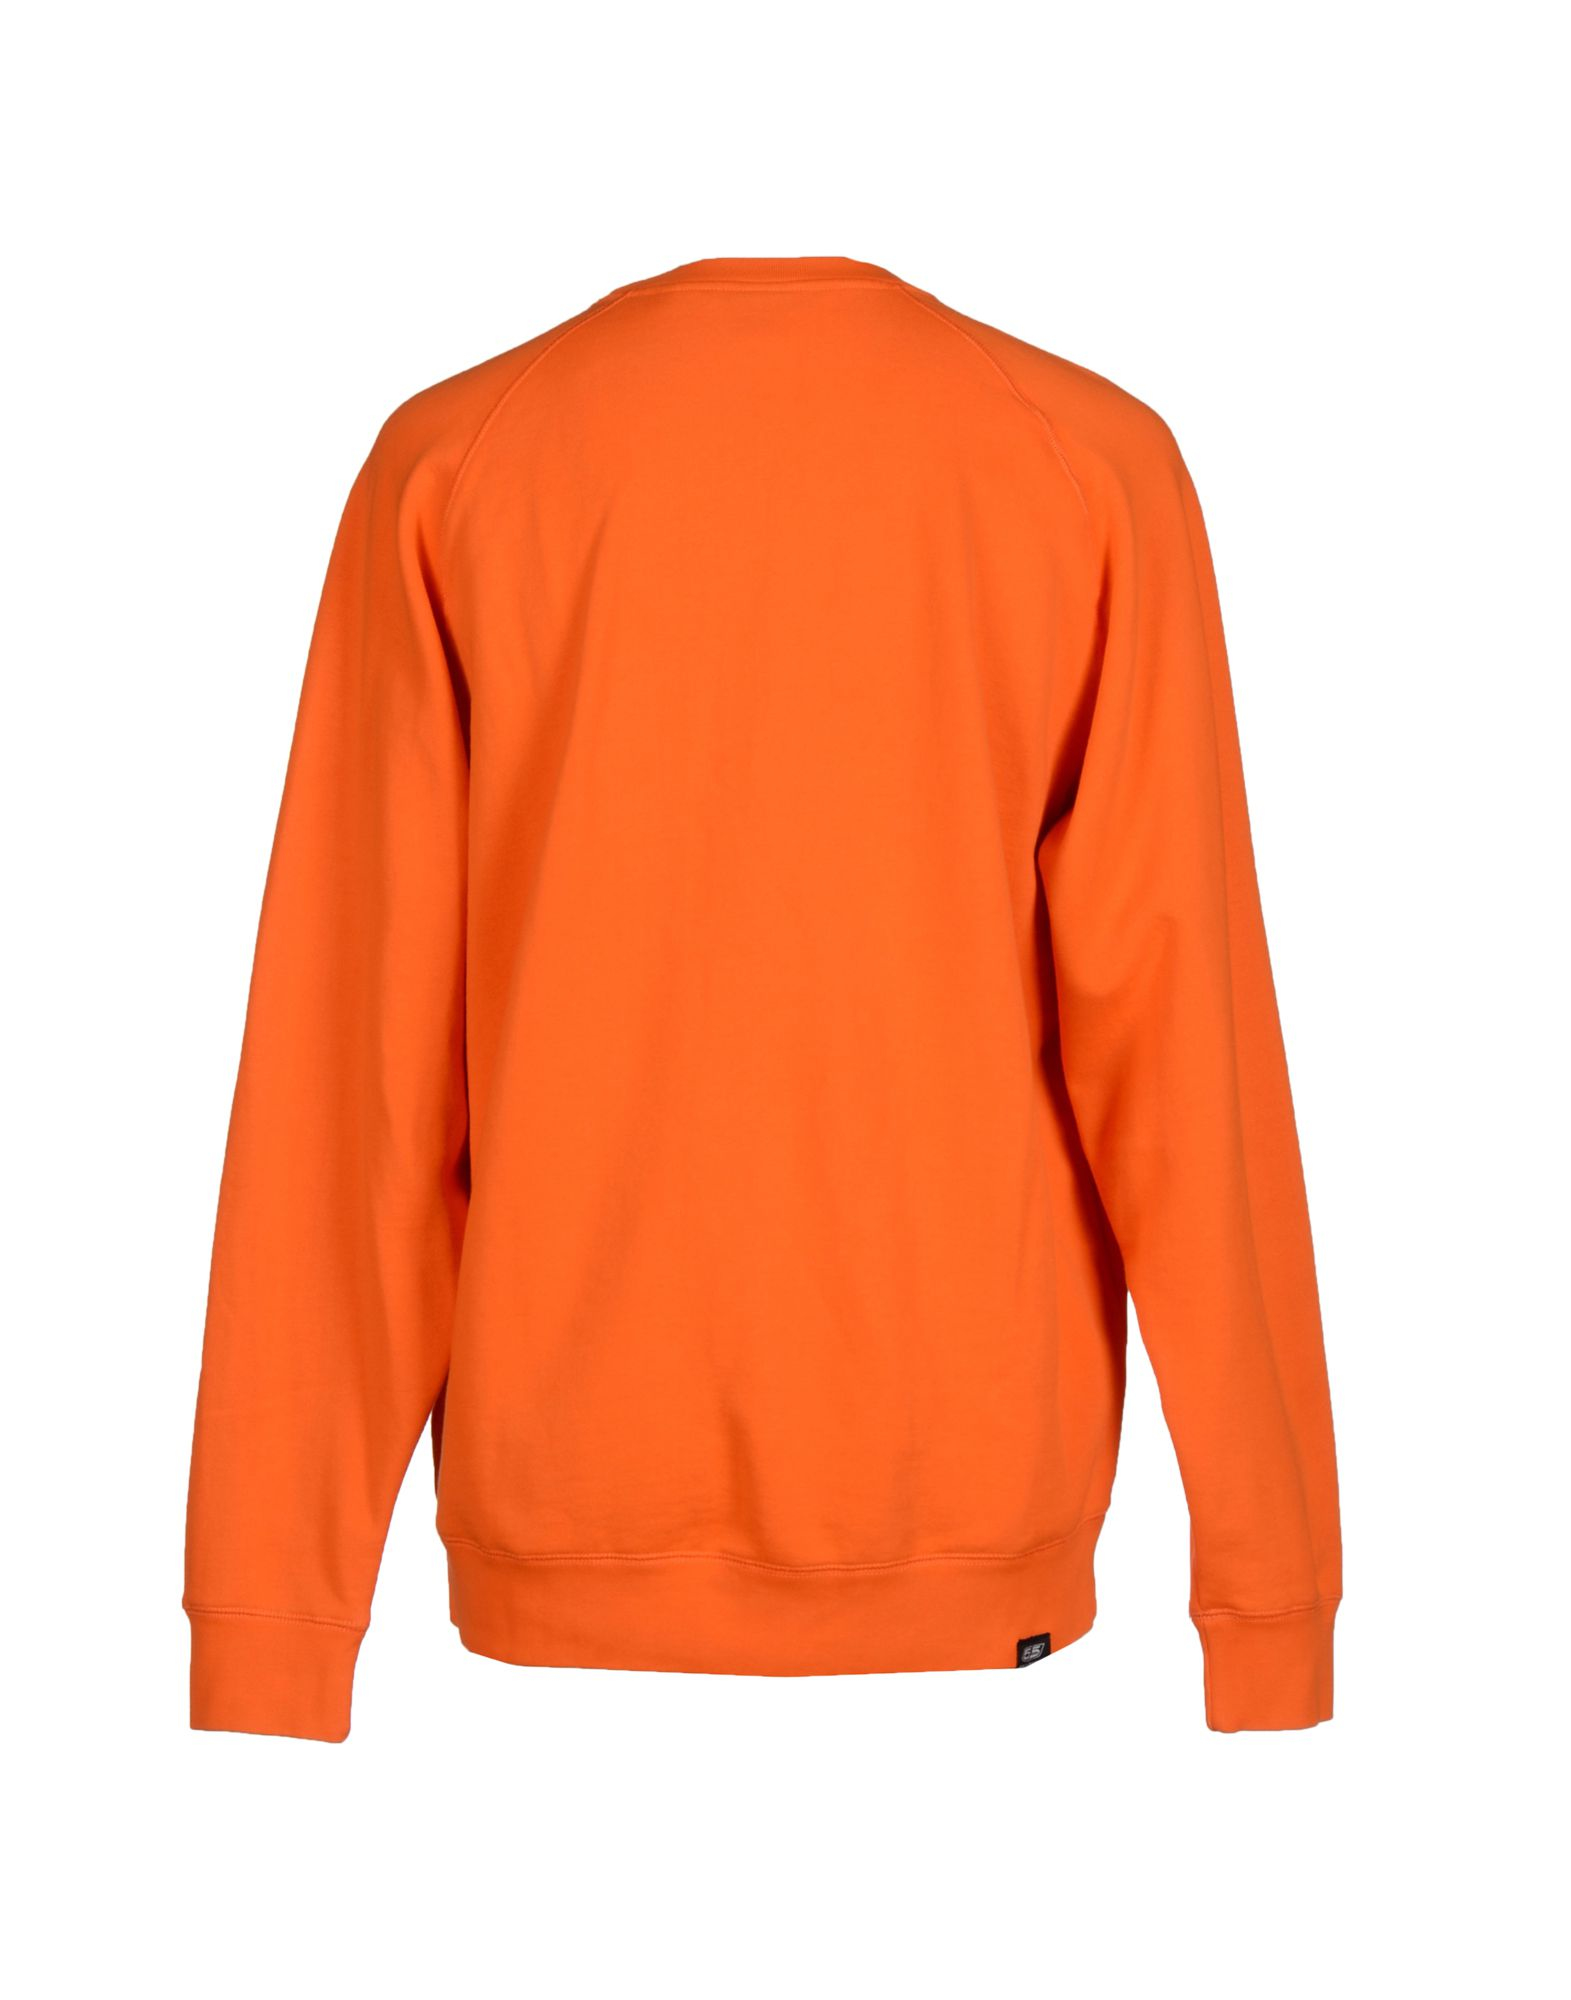 55dsl Sweatshirt in Orange for Men